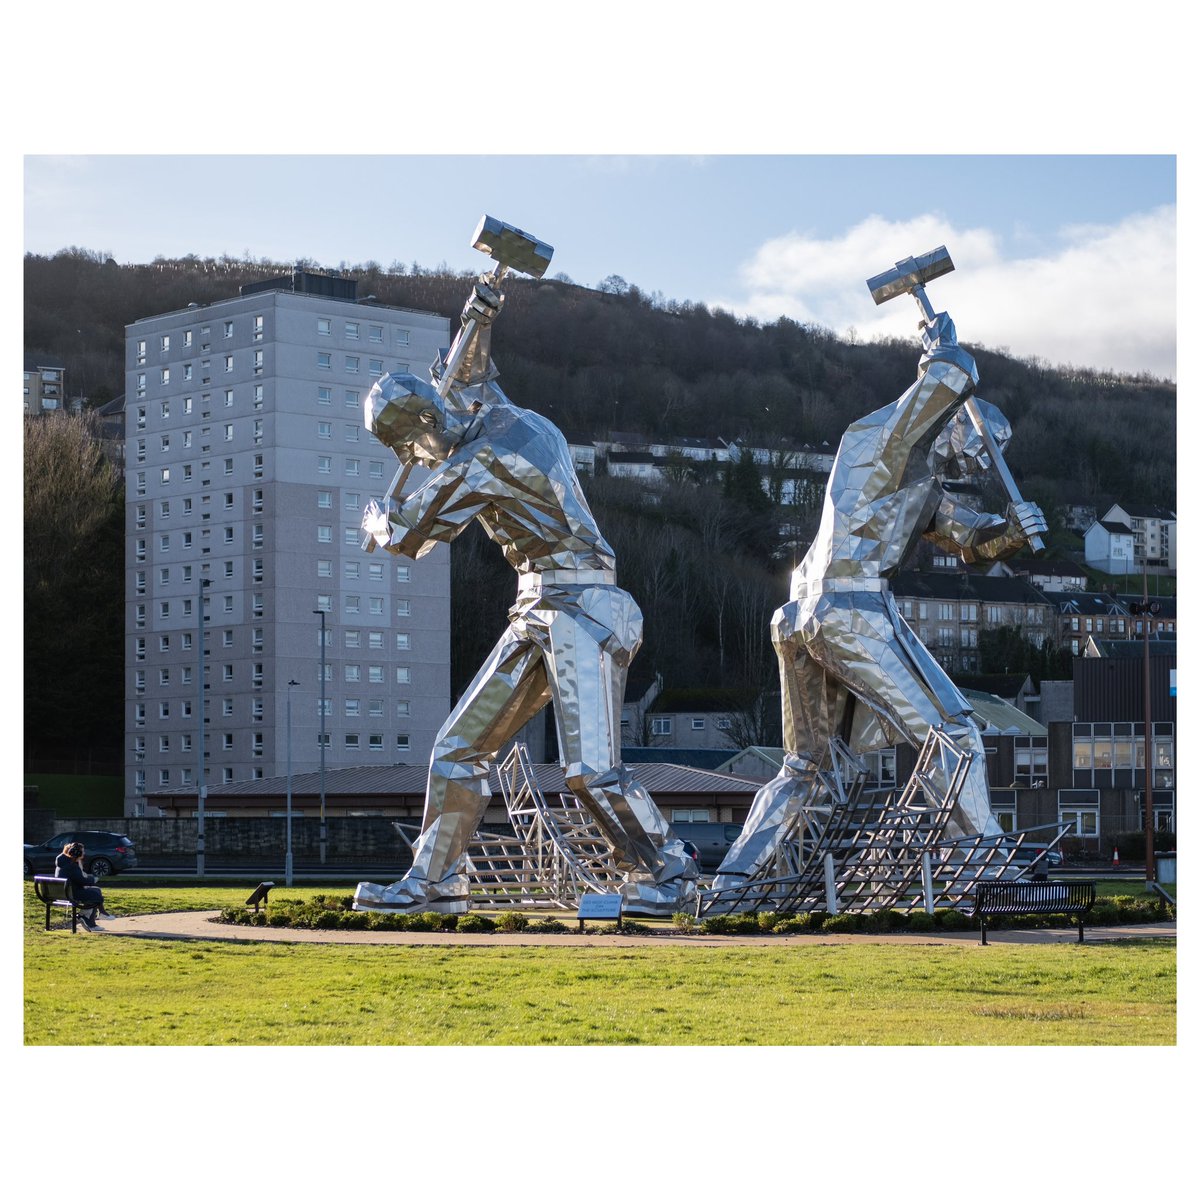 I was taken aback by these Giant #shipbuilders #sculpture in #portglasgow #inverclyde #scotland By artist #johnmckenna #explorescotland #scottishtown #heritage #shipbuilding